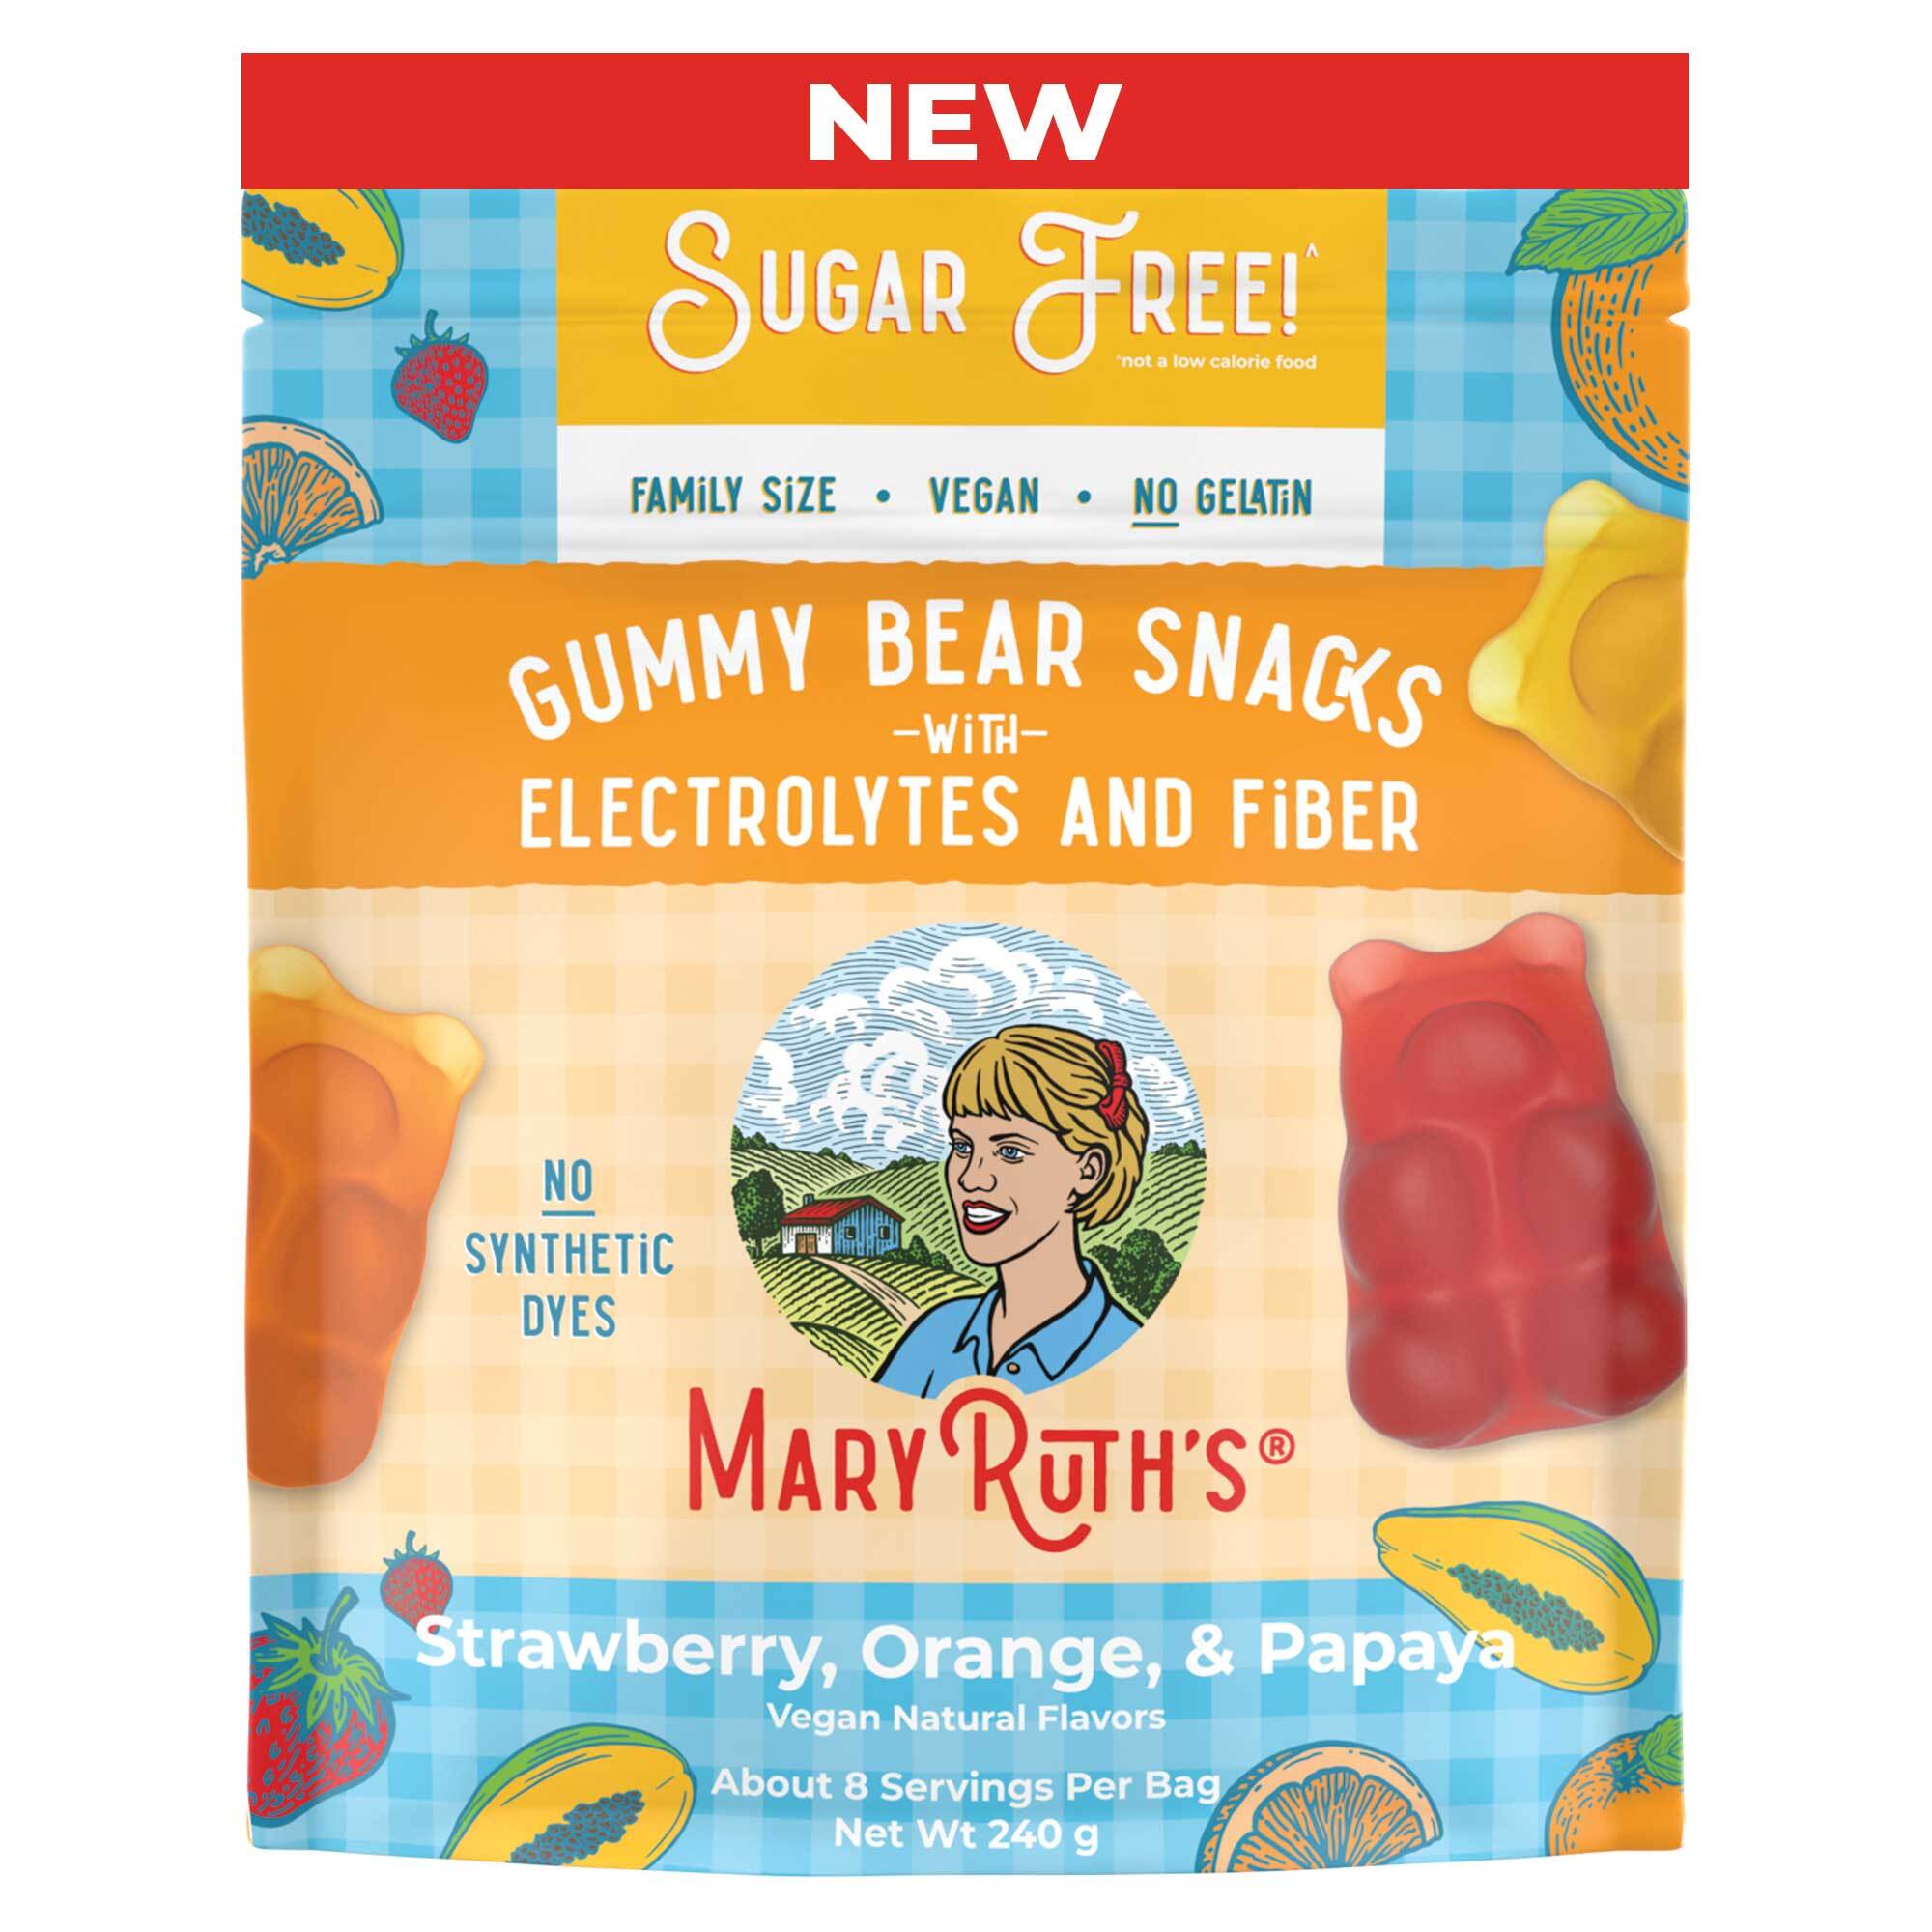 Gummy snacks